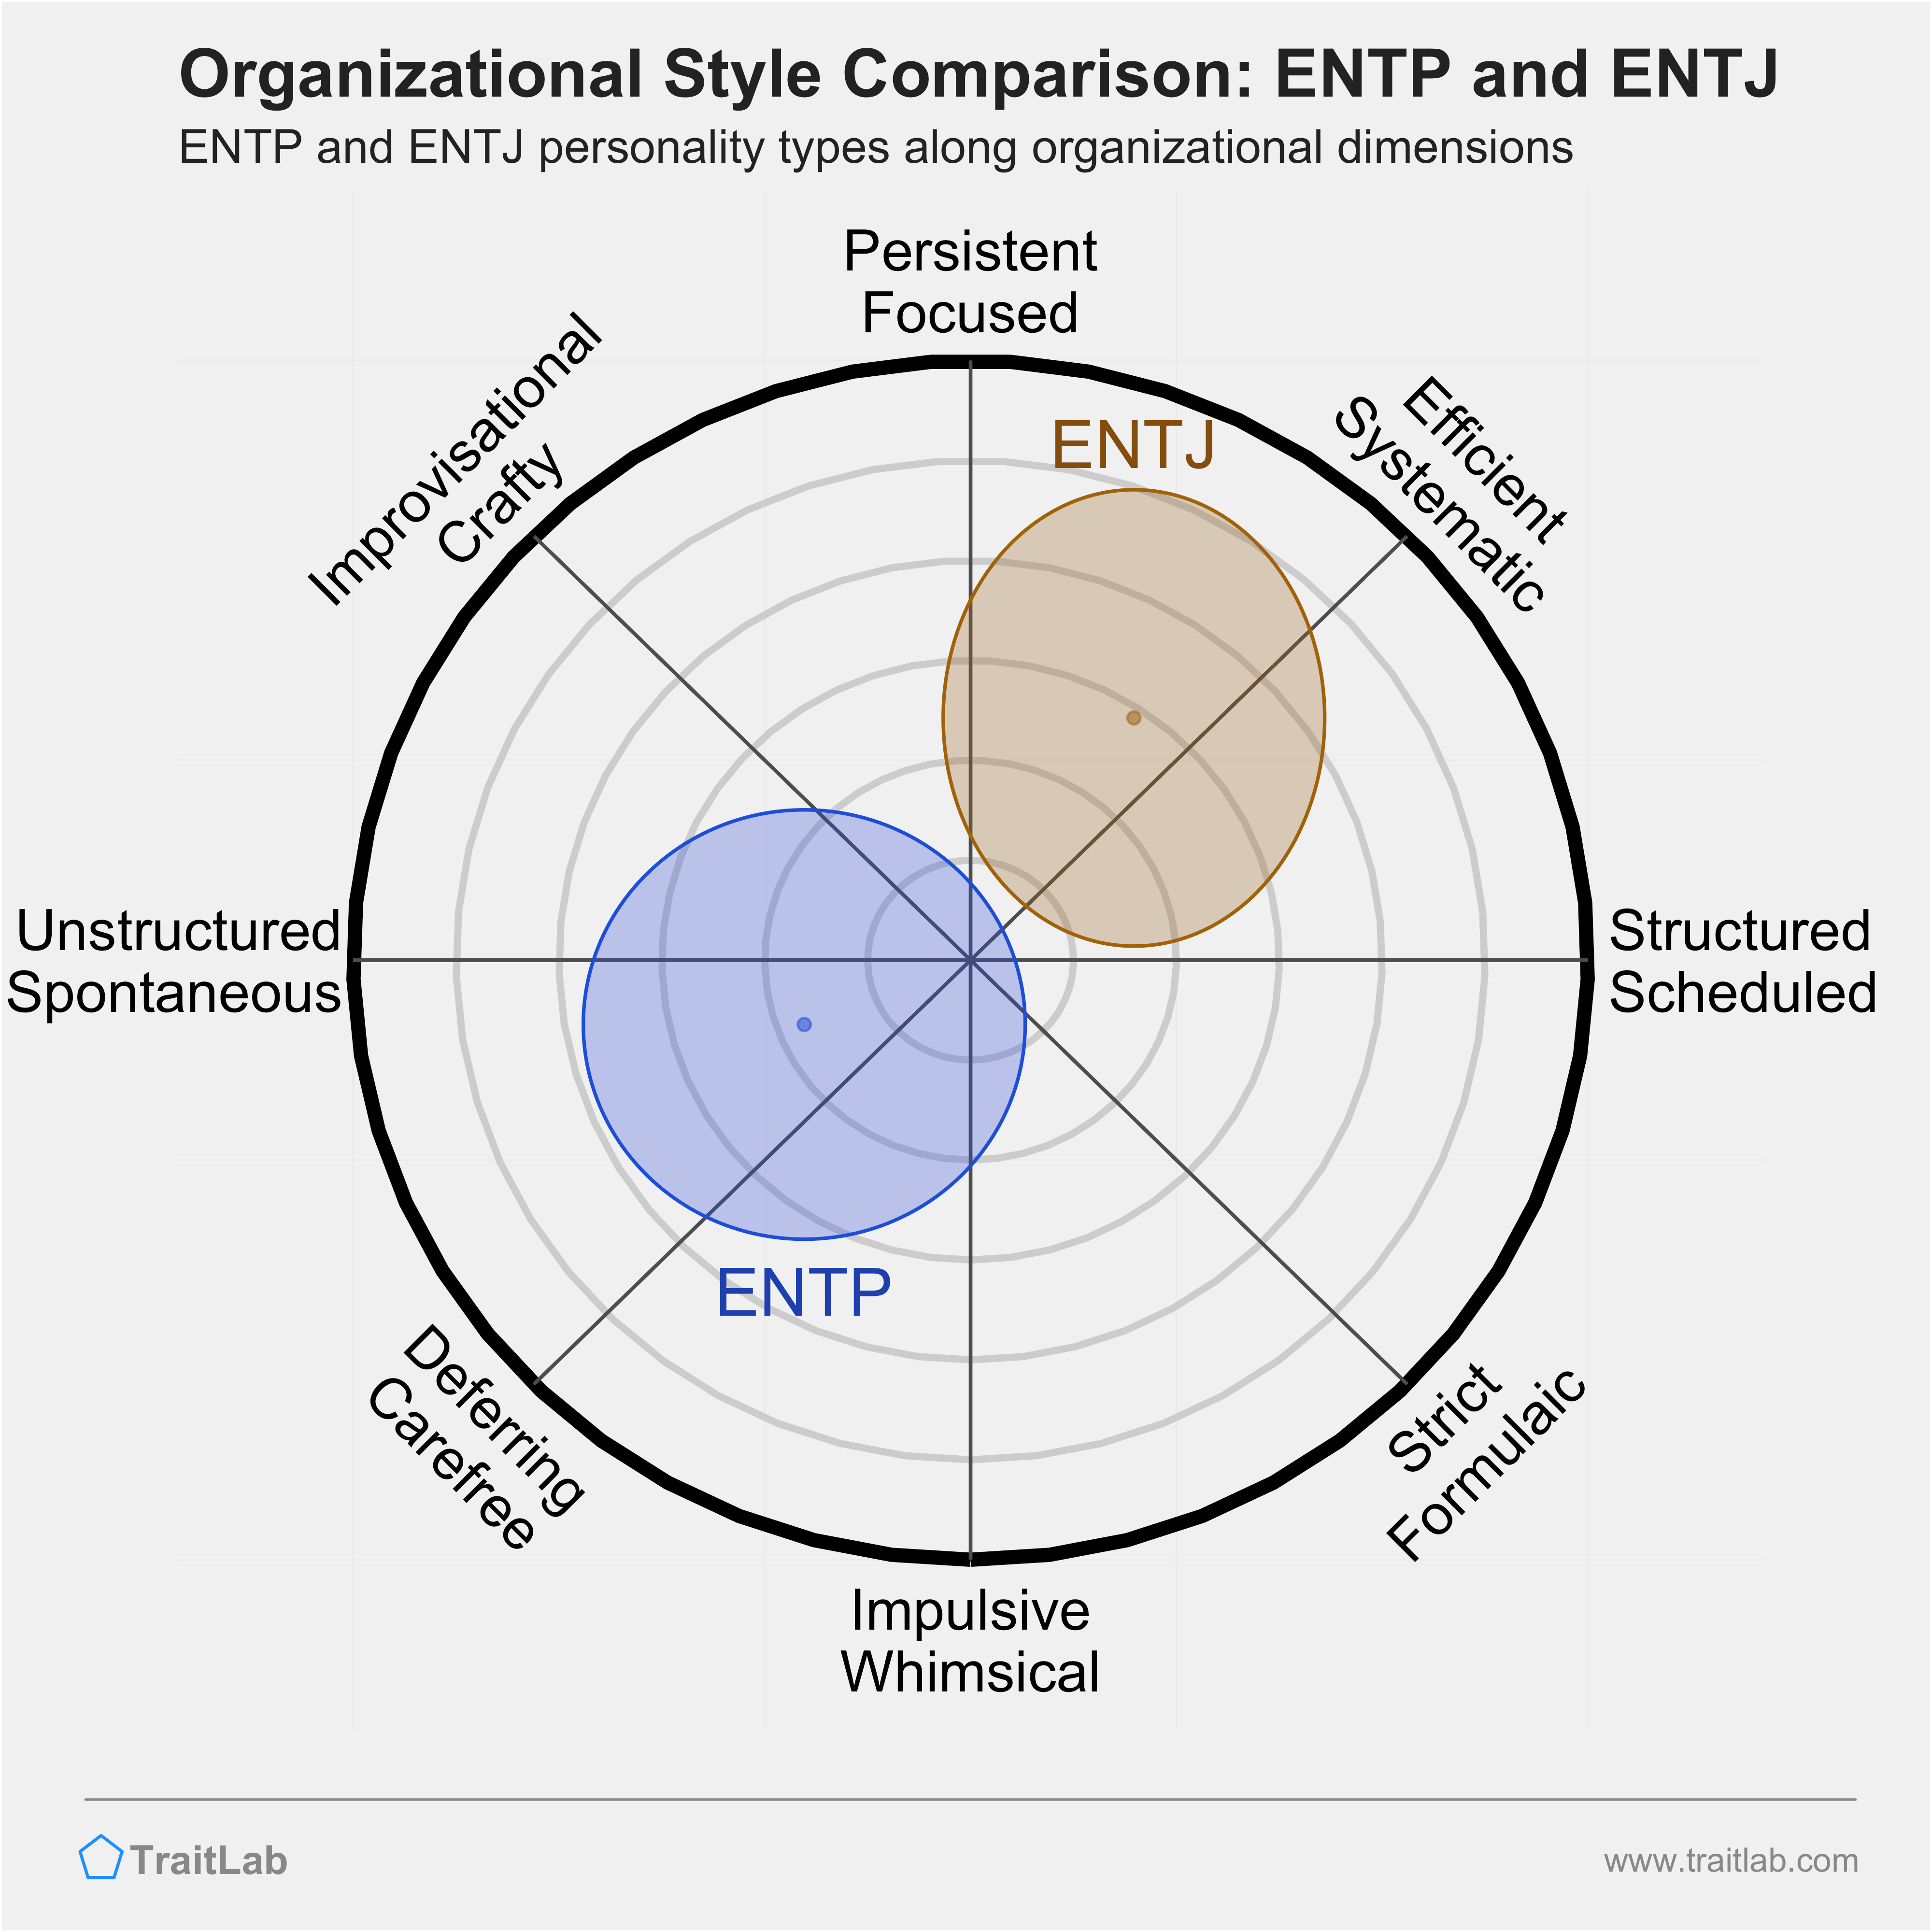 ENTP and ENTJ comparison across organizational dimensions